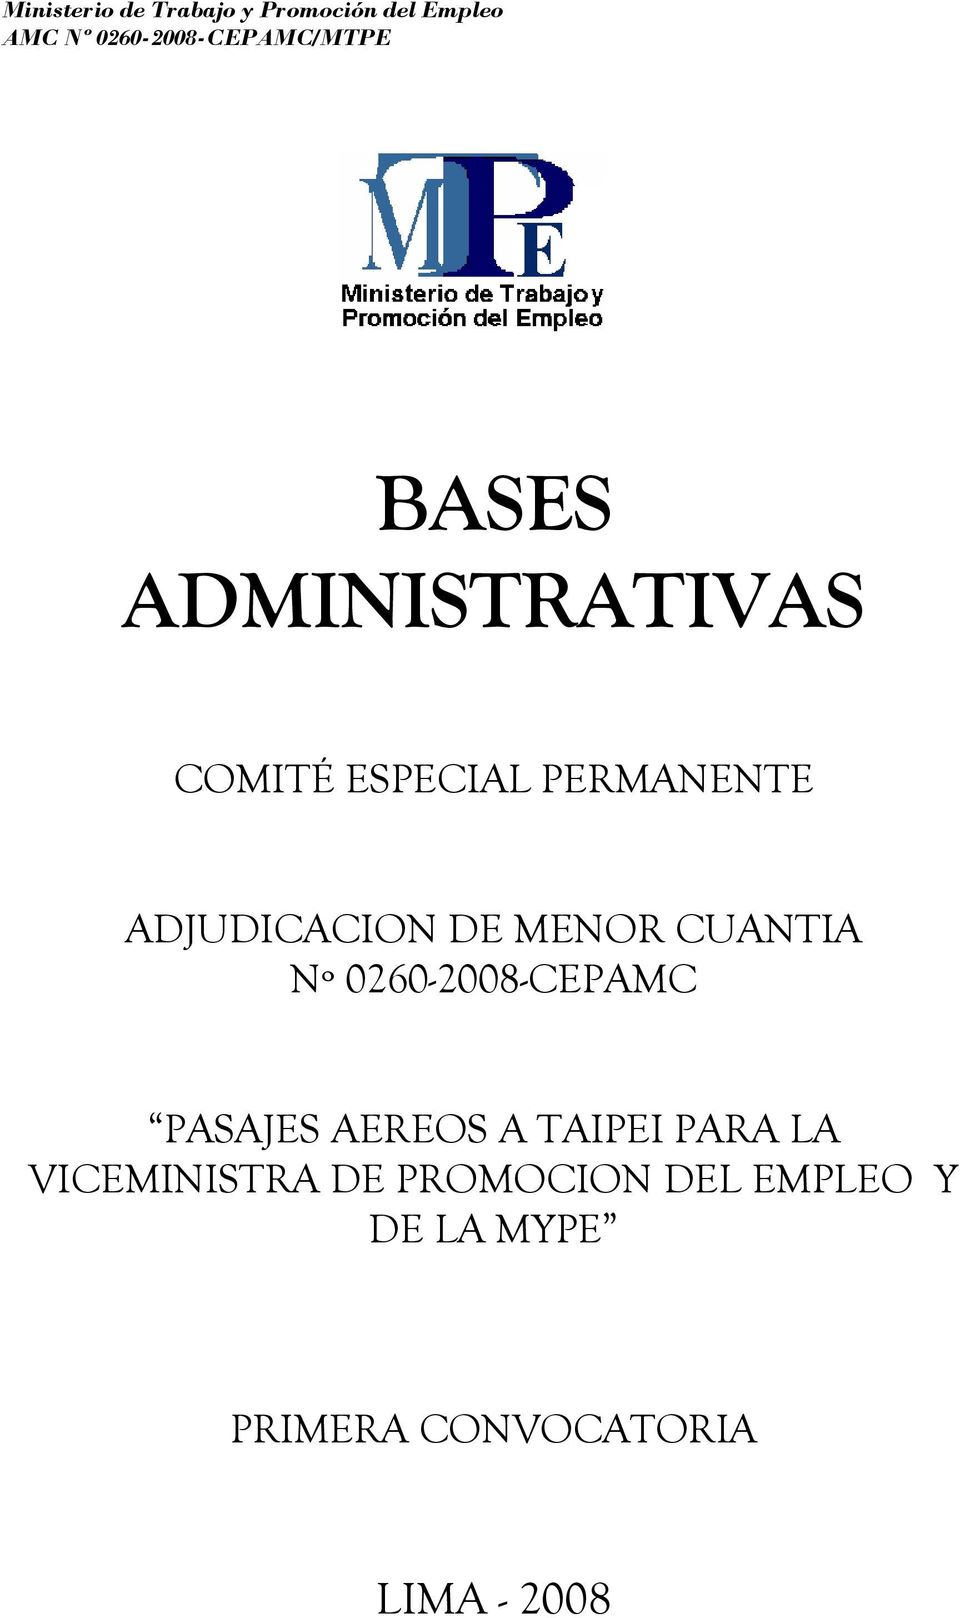 ADJUDICACION DE MENOR CUANTIA Nº 0260-2008-CEPAMC PASAJES AEREOS A